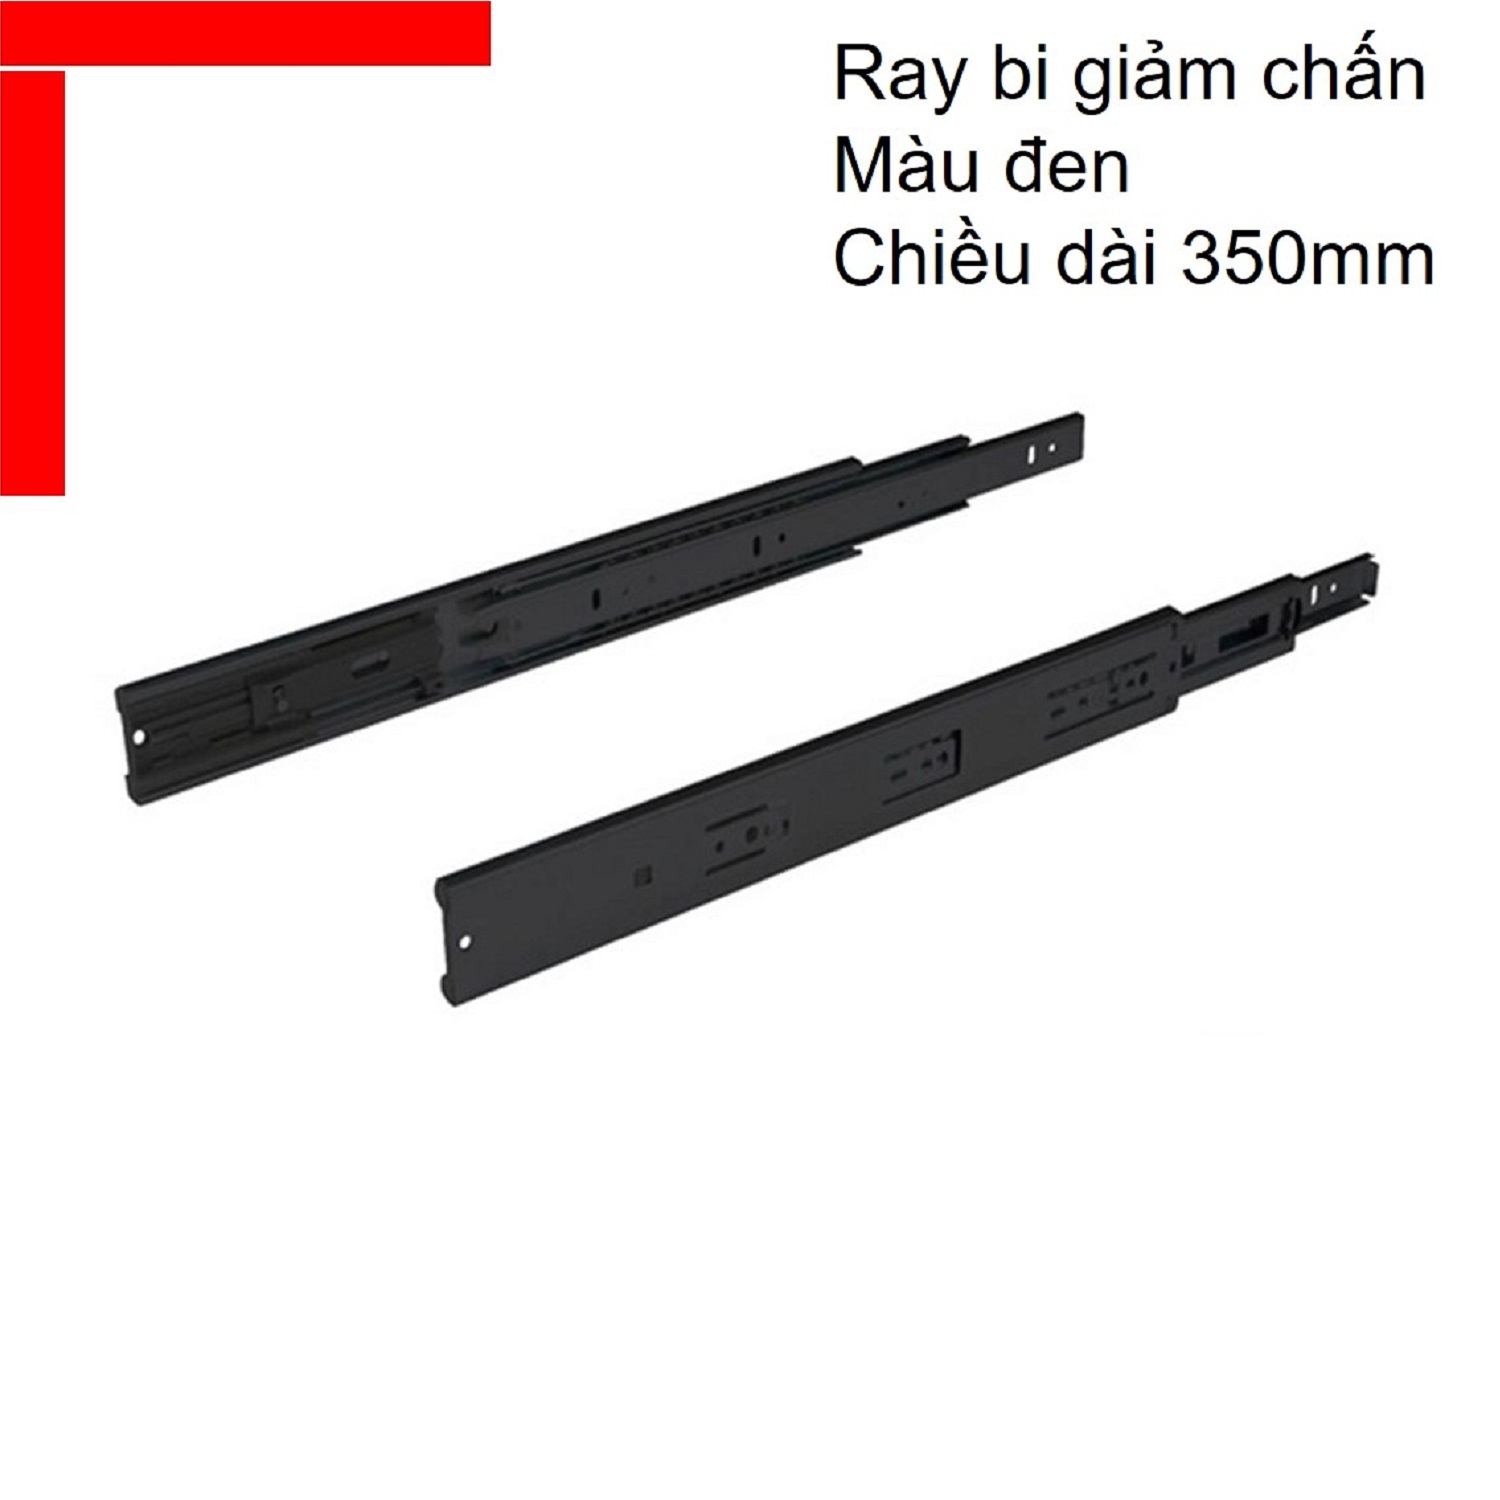 Ray bi giảm chấn Hafele chiều dài 350mm màu đen 494.02.072